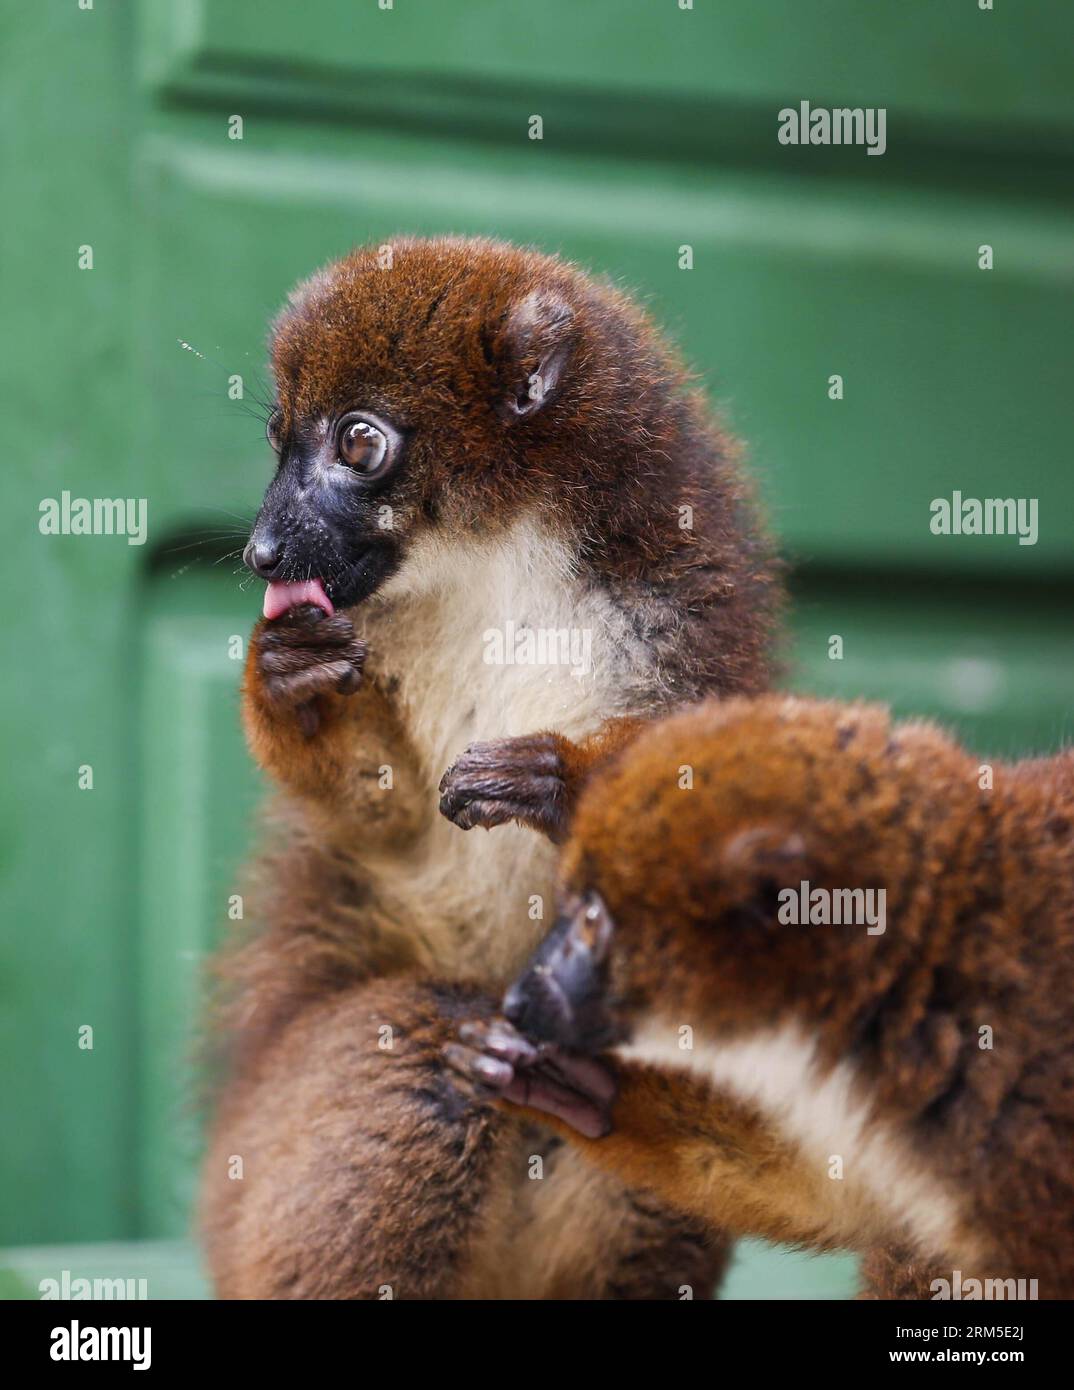 Bildnummer: 60635150 Datum: 24.10.2013 Copyright: imago/Xinhua Two lemurs eat Honey in a zoo in Antananarivo, capitale del Madagascar, 24 ottobre 2013. L'Unione internazionale per la conservazione della natura (IUCN) considera i lemuri, endemici del Madagascar, come i mammiferi più a rischio al mondo, in quanto fino al 90% di tutte le specie di lemuri probabilmente scompariranno nei prossimi 25 anni a causa della perdita dell'habitat e della caccia. (Xinhua/Zhang Chen) MADAGASCAR-ANTANANARIVO-SPECIE-LEMURI PUBLICATIONxNOTxINxCHN Zoo Tiere Lemuren Lemur xas x0x 2013 premiumd di hoch 60635150 Data 24 10 2013 Copyrigh Foto Stock